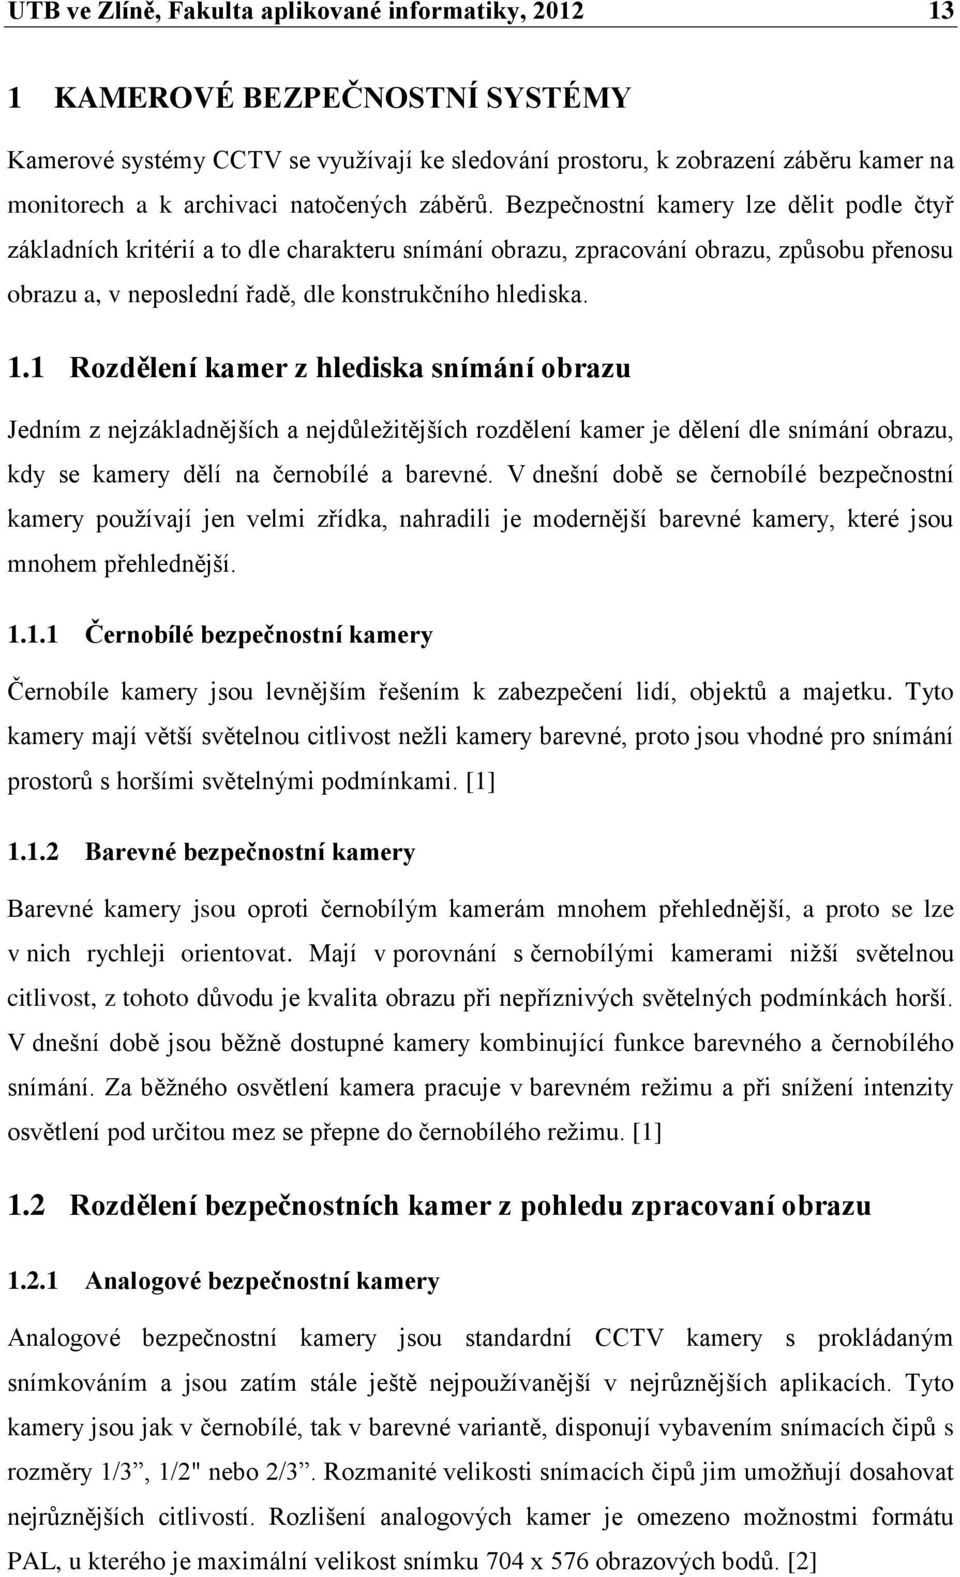 ZABEZPEČENÍ OBJEKTU POMOCÍ KAMEROVÉHO SYSTÉMU - PDF Free Download